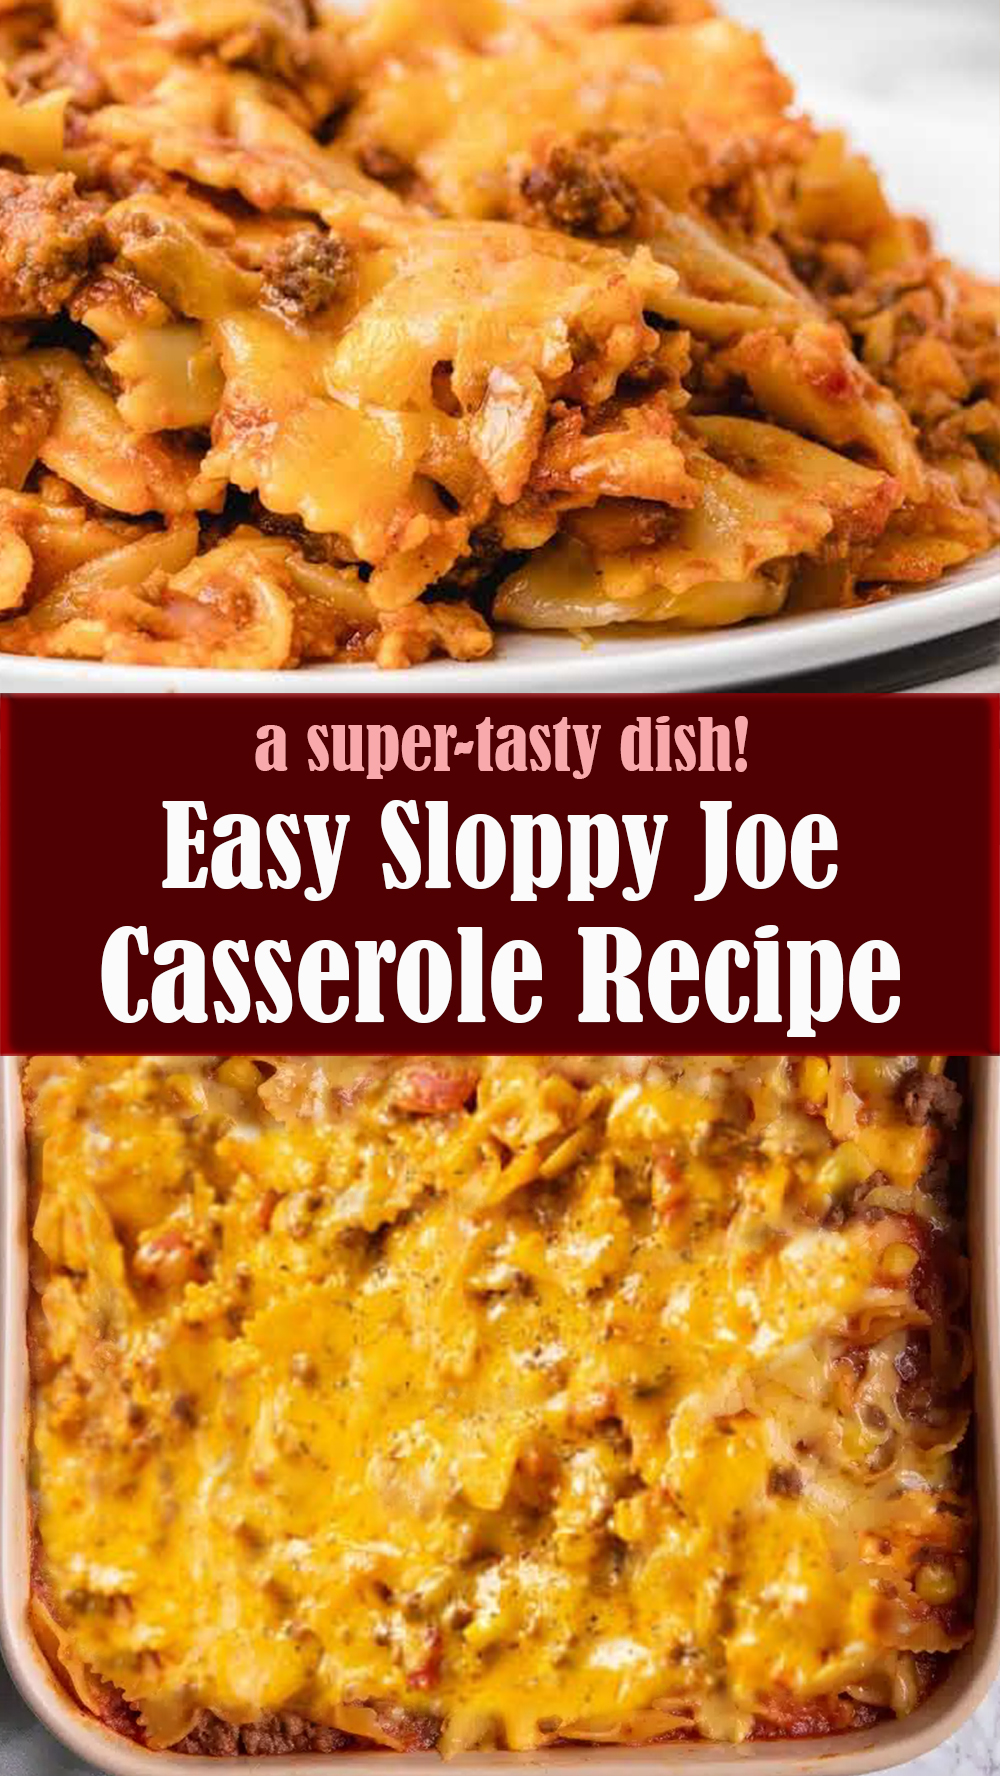 Easy Sloppy Joe Casserole Recipe